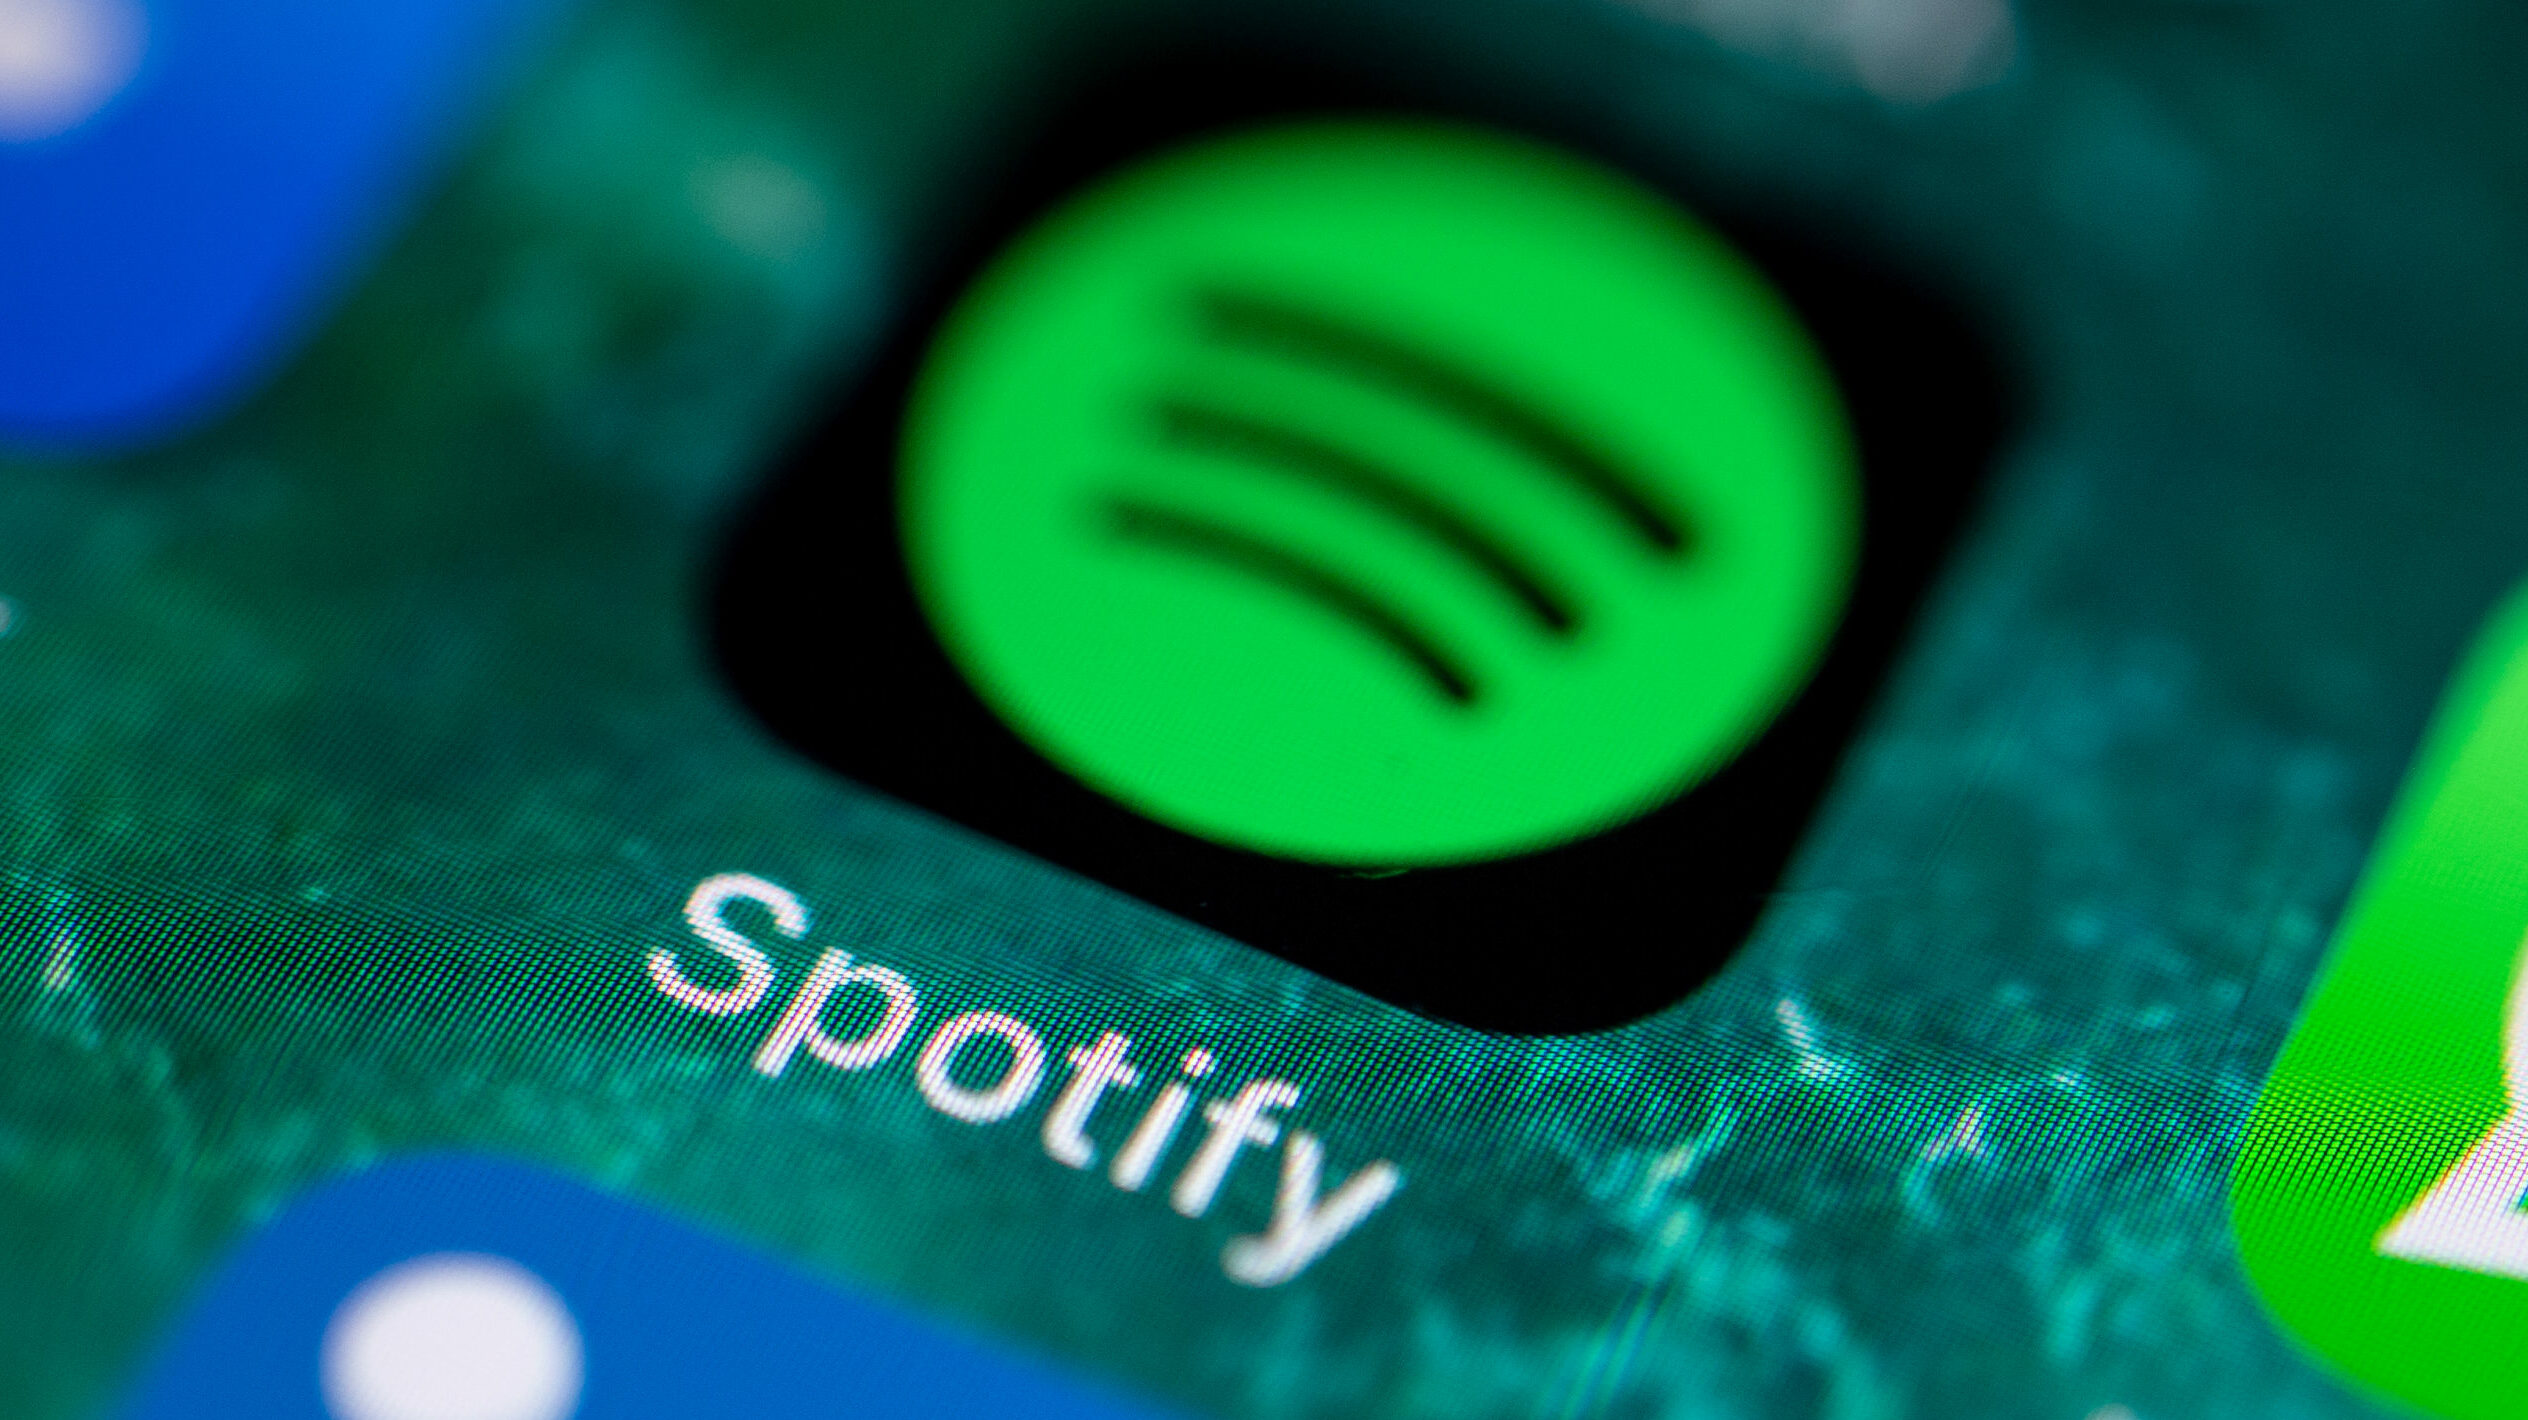 Spotify sufre caída a nivel mundial